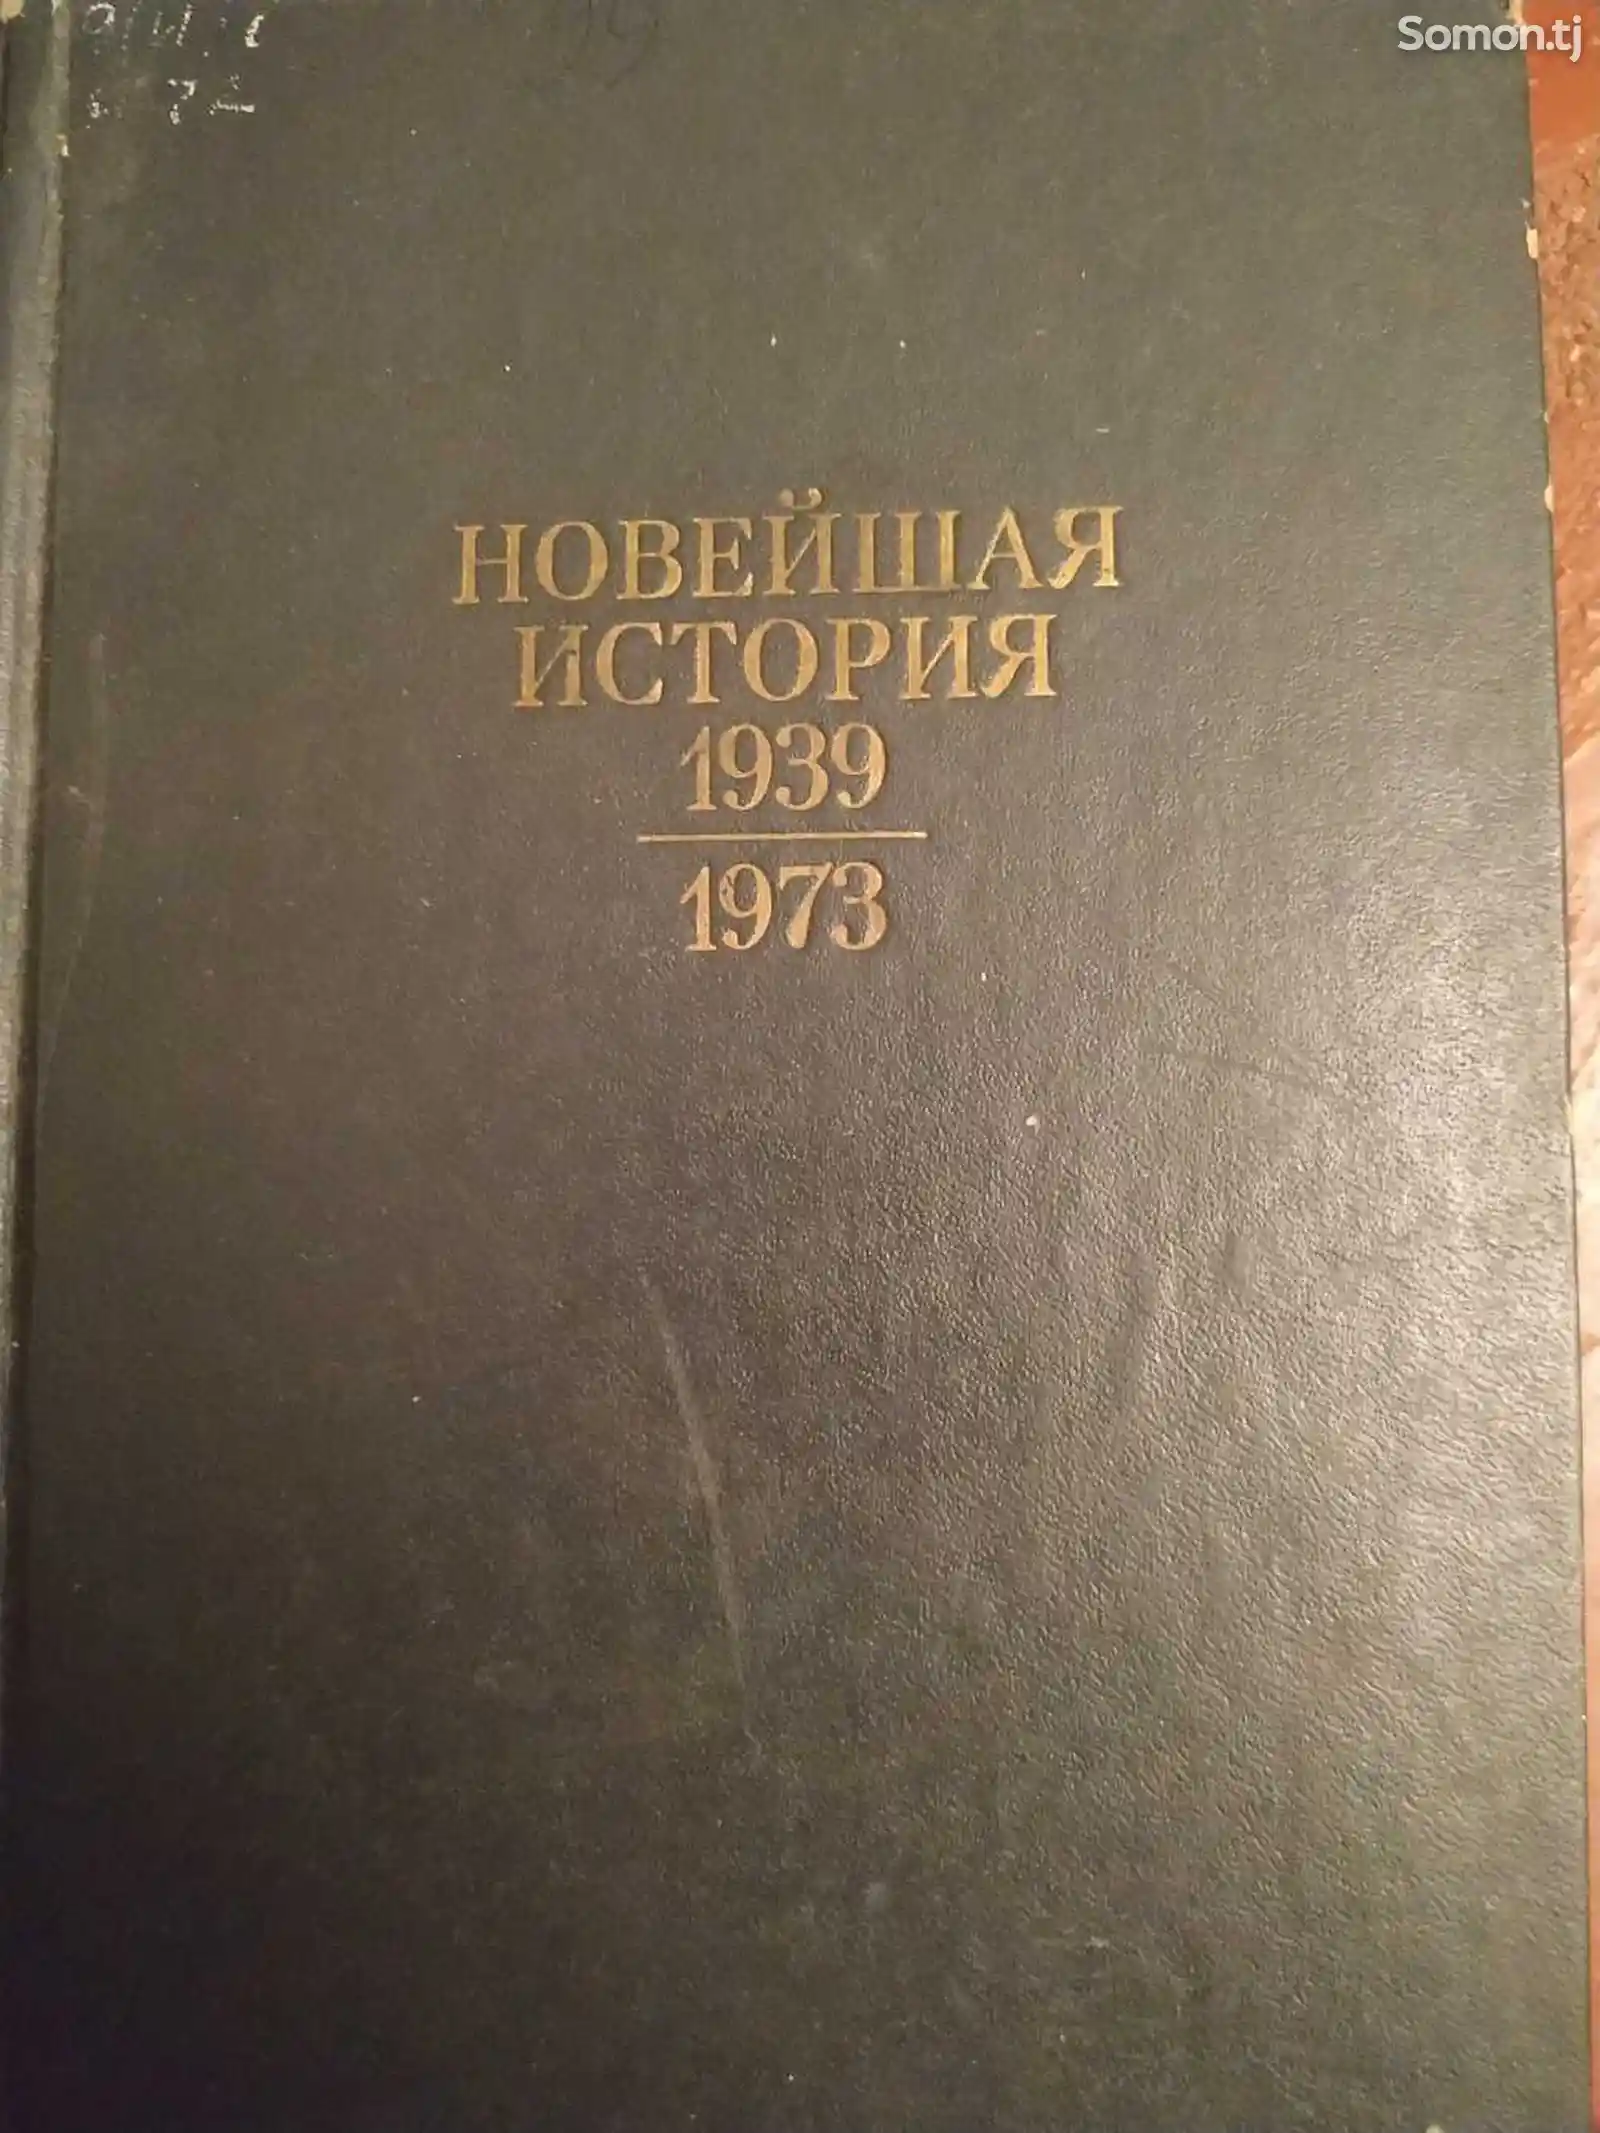 Учебник новейшая история 1939-1973-1